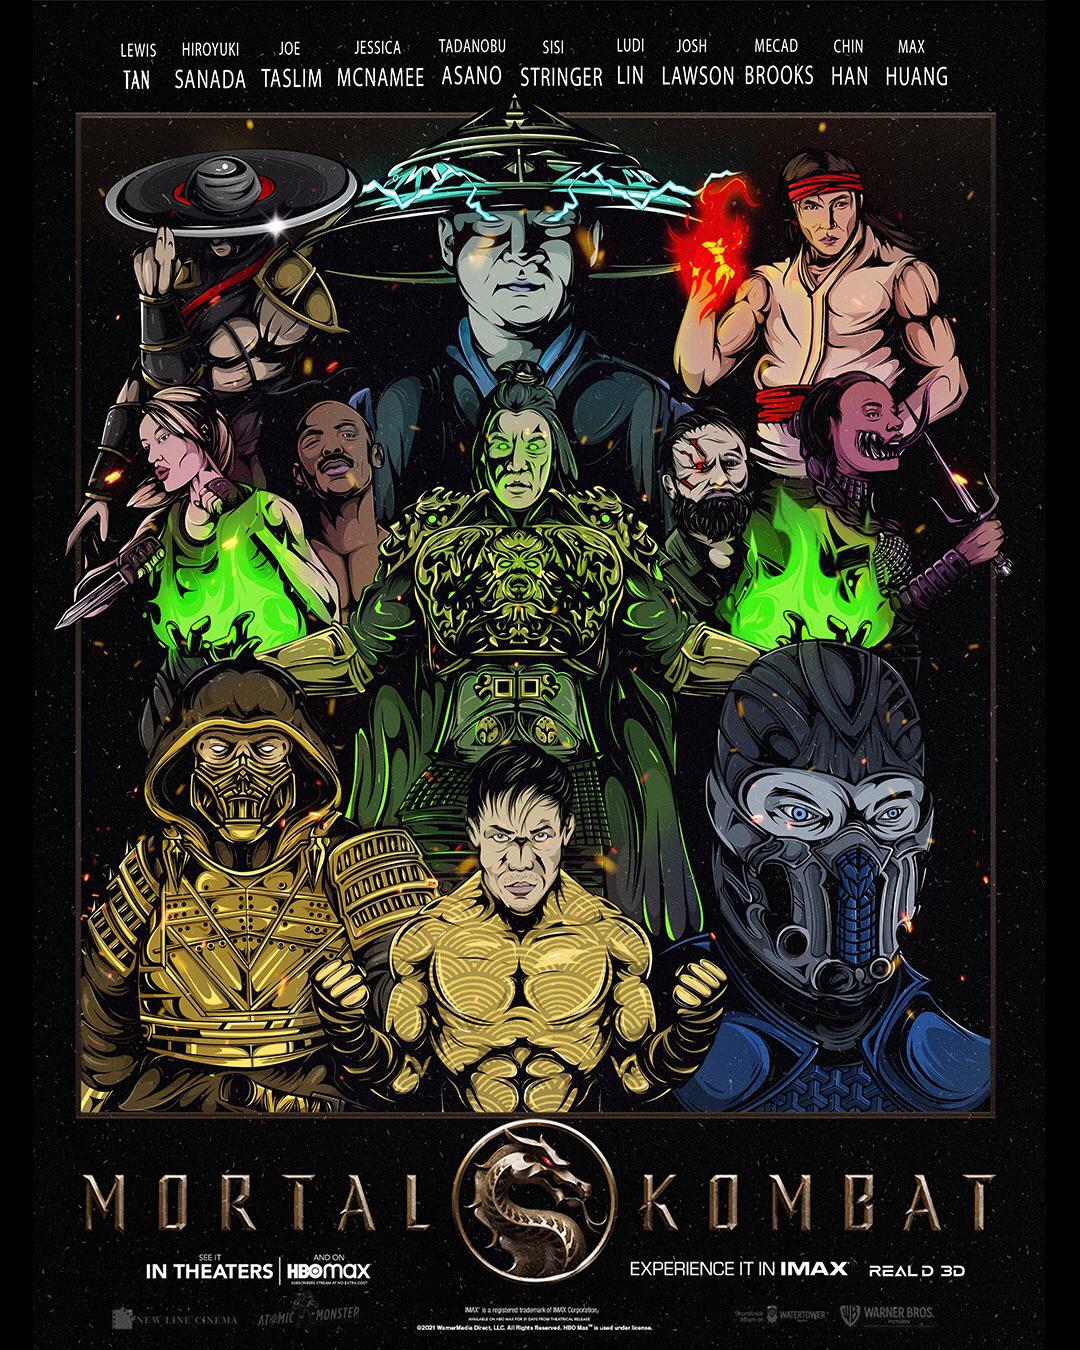 Mortal Kombat: Josh Lawson Calls Role a 'Childhood Dream Come True